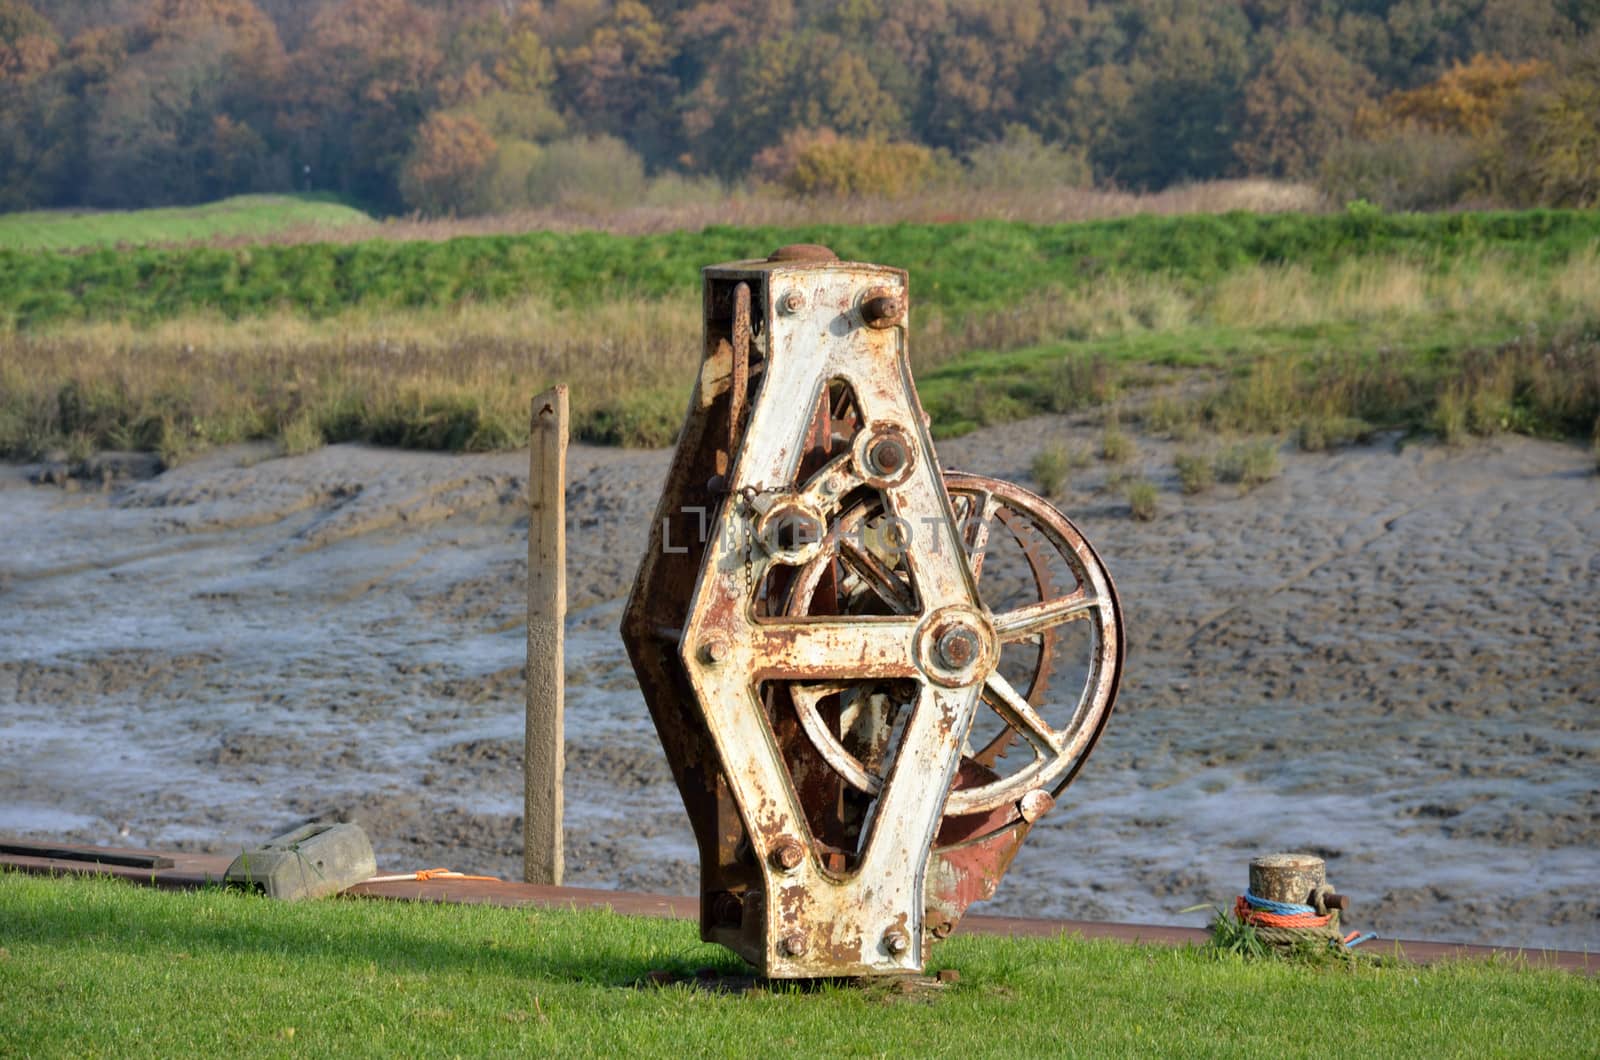 Metal winder by river